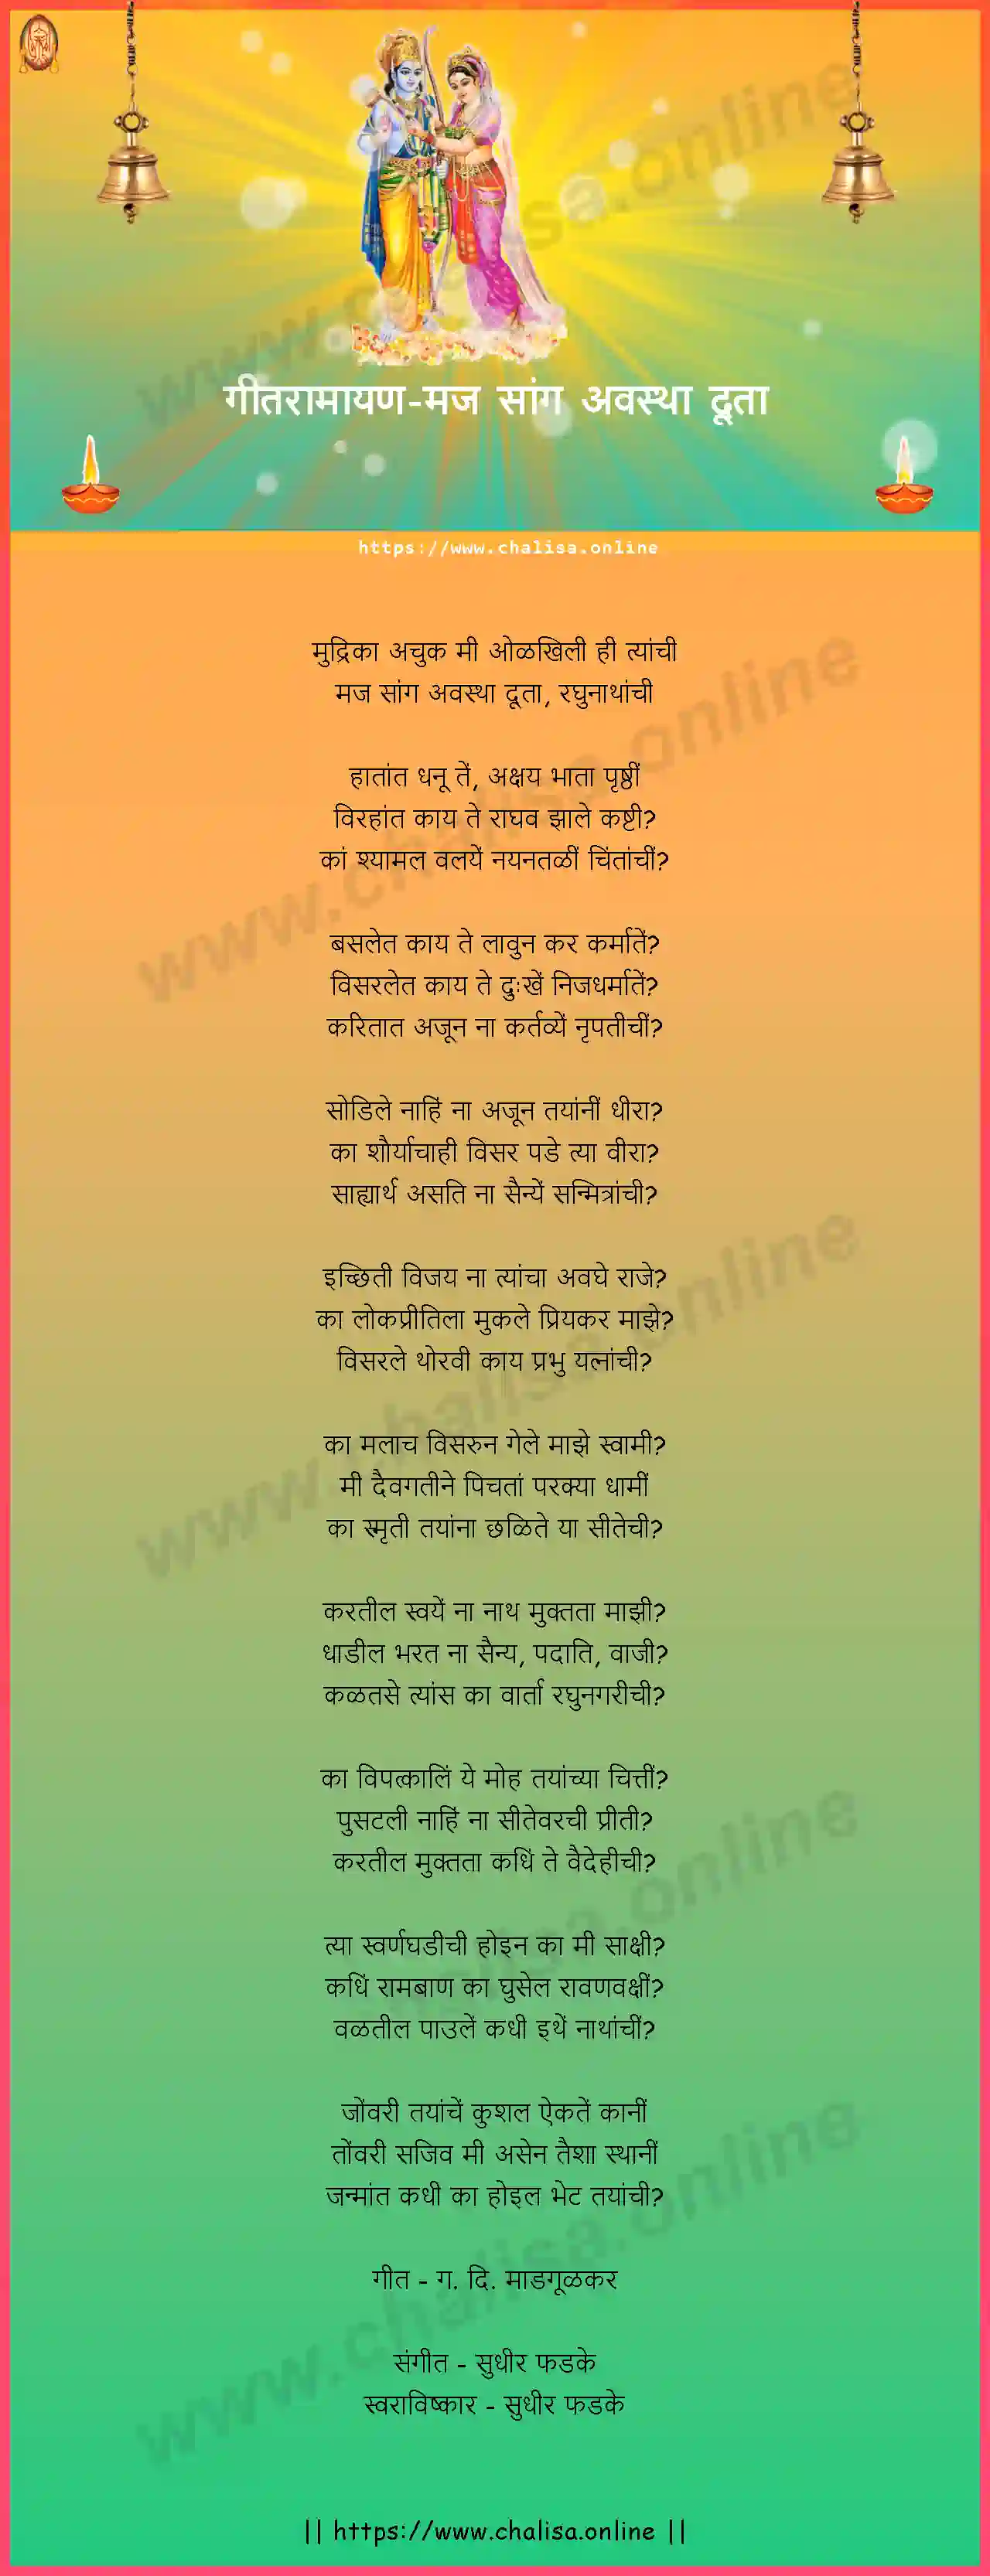 maj-sang-avastha-duta-geet-ramayan-marathi-lyrics-download